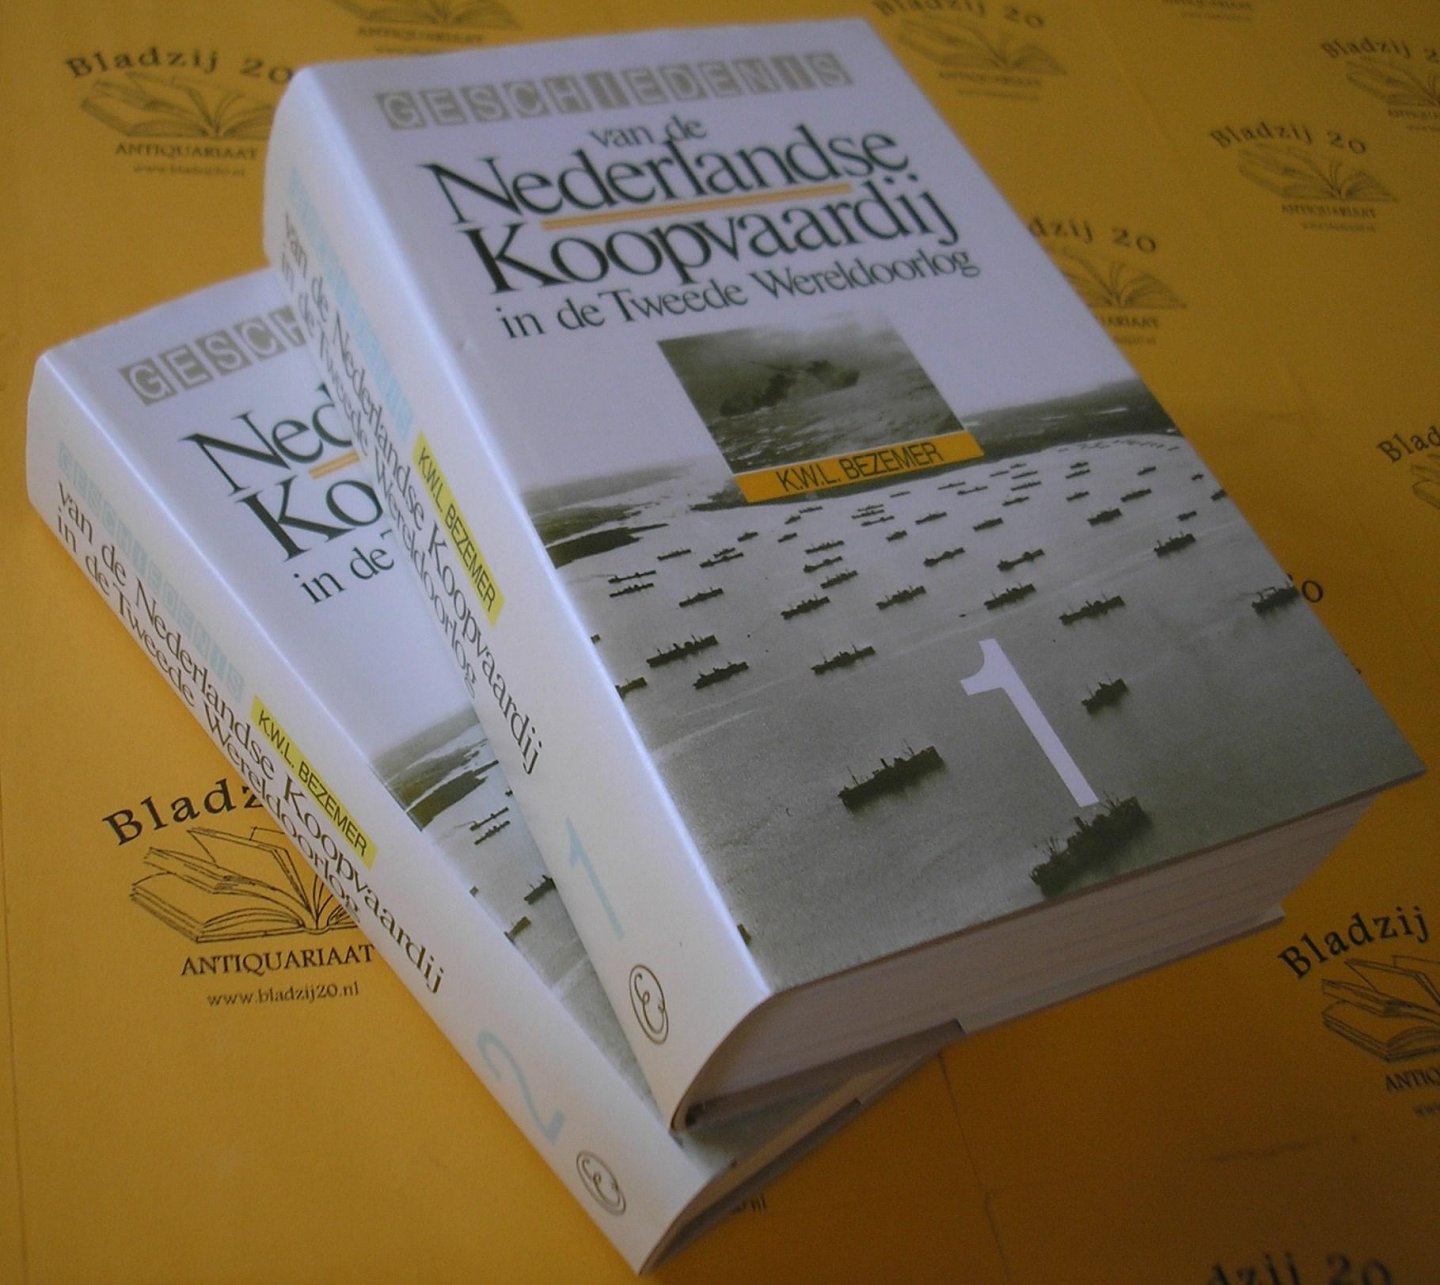 Bezemer, K.W.L. - Geschiedenis van de Nederlandse Koopvaardij in de Tweede Wereldoorlog. Deel 1 en 2.